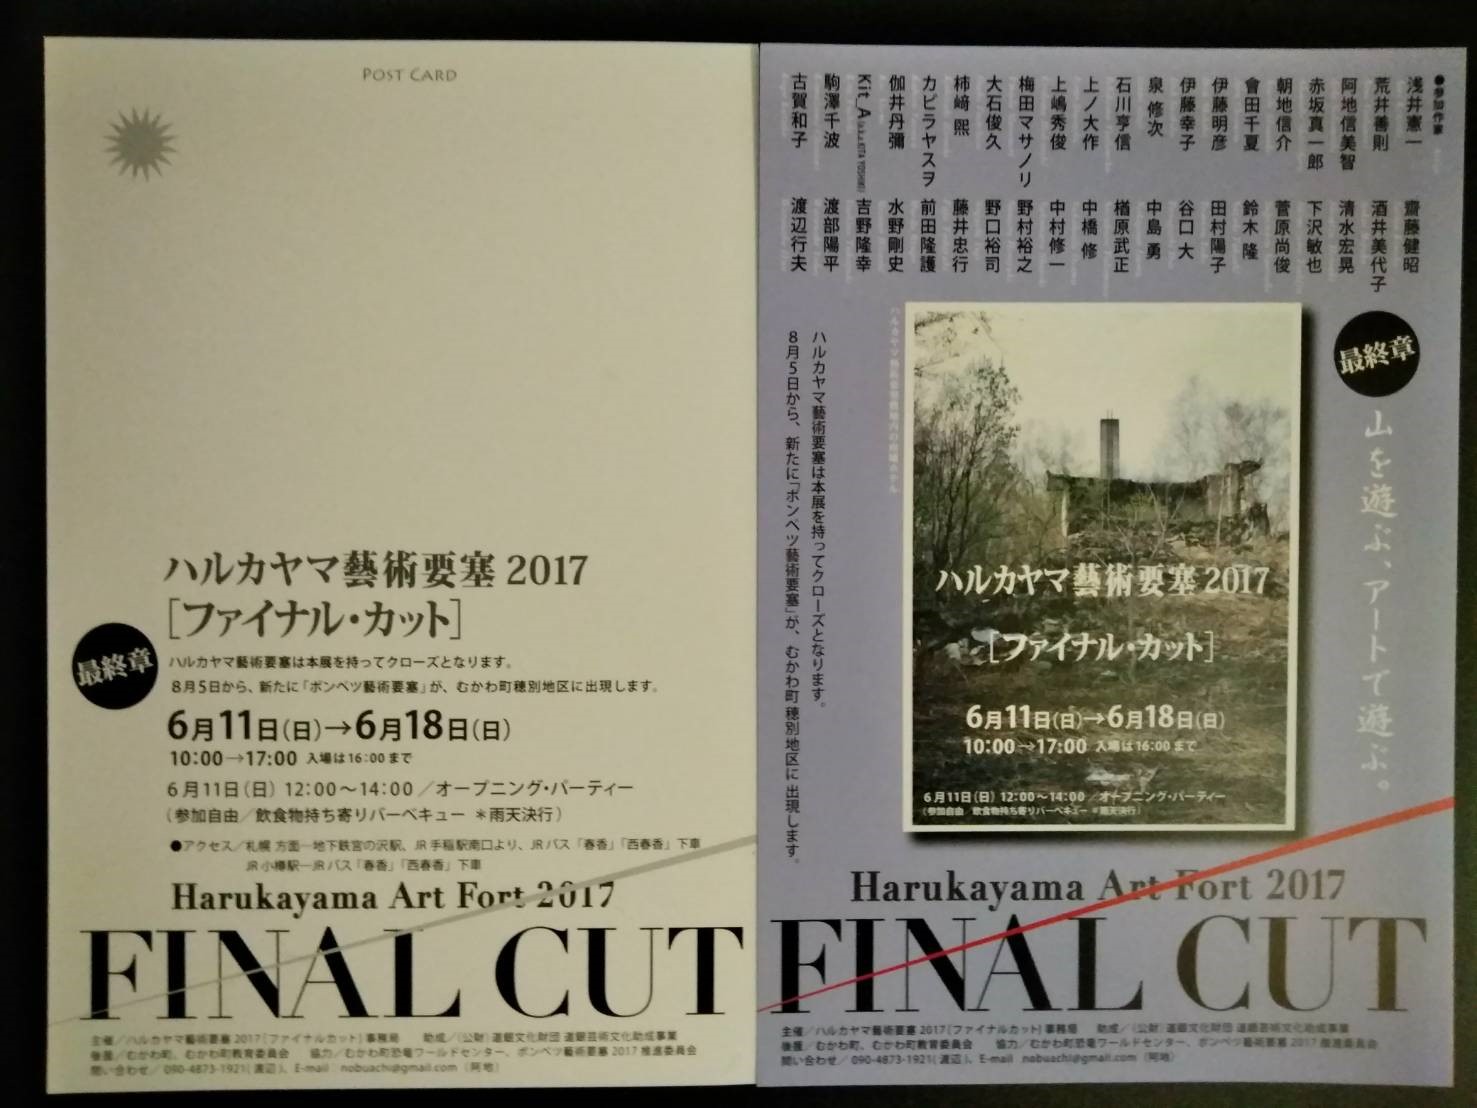 Harukayama Art Fort 2017-Final Cut-